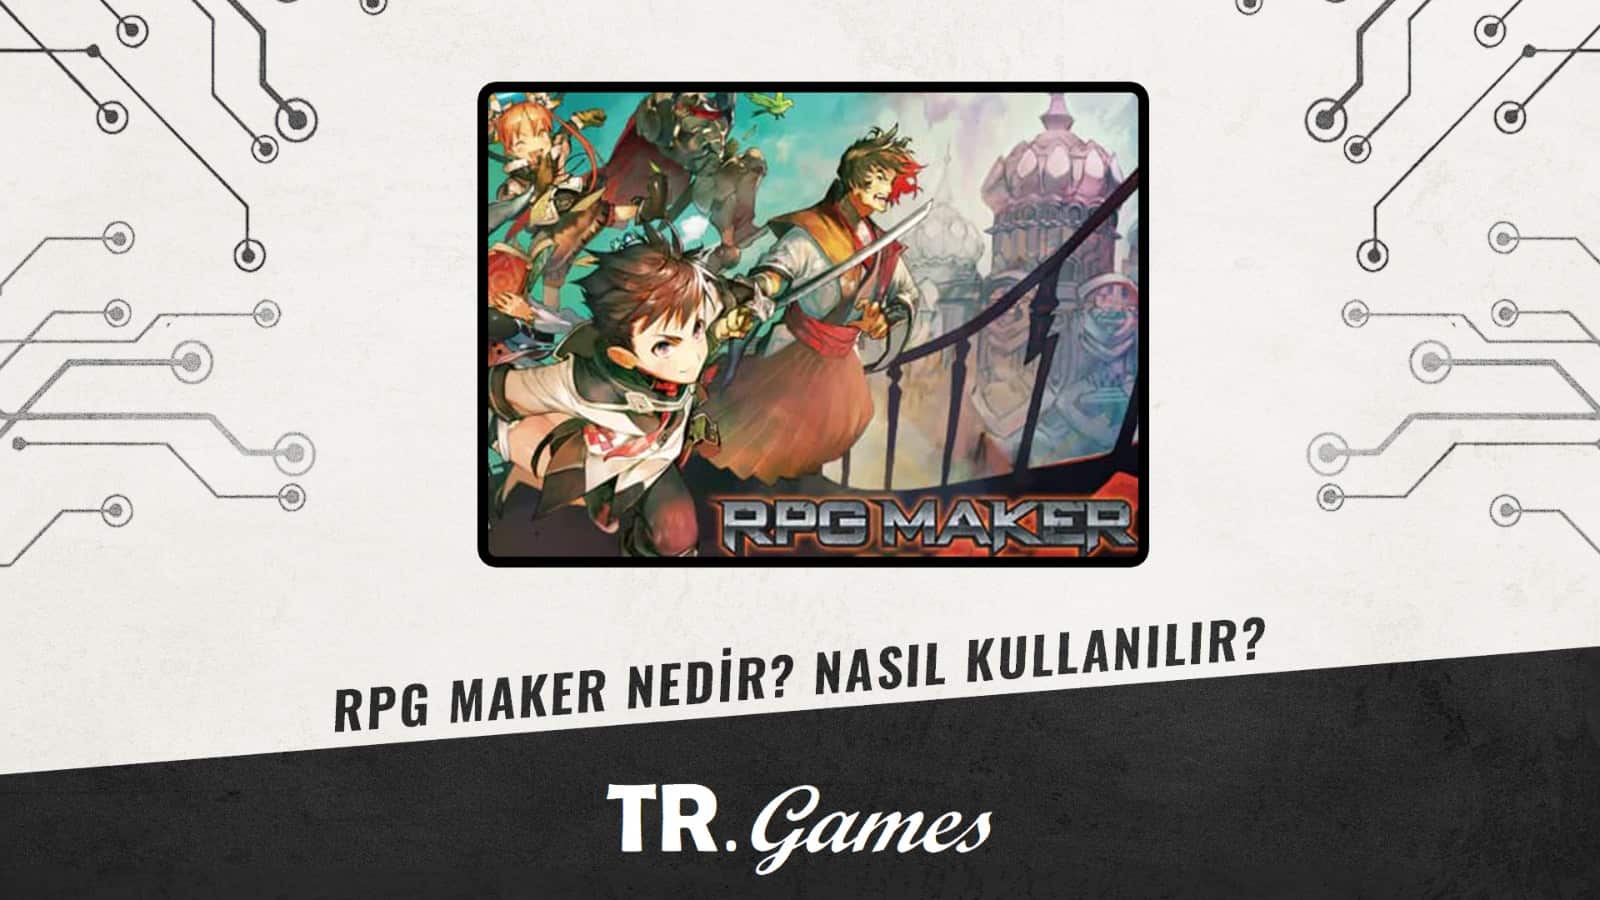 RPG Maker Nedir? Nasıl Kullanılır? Banner